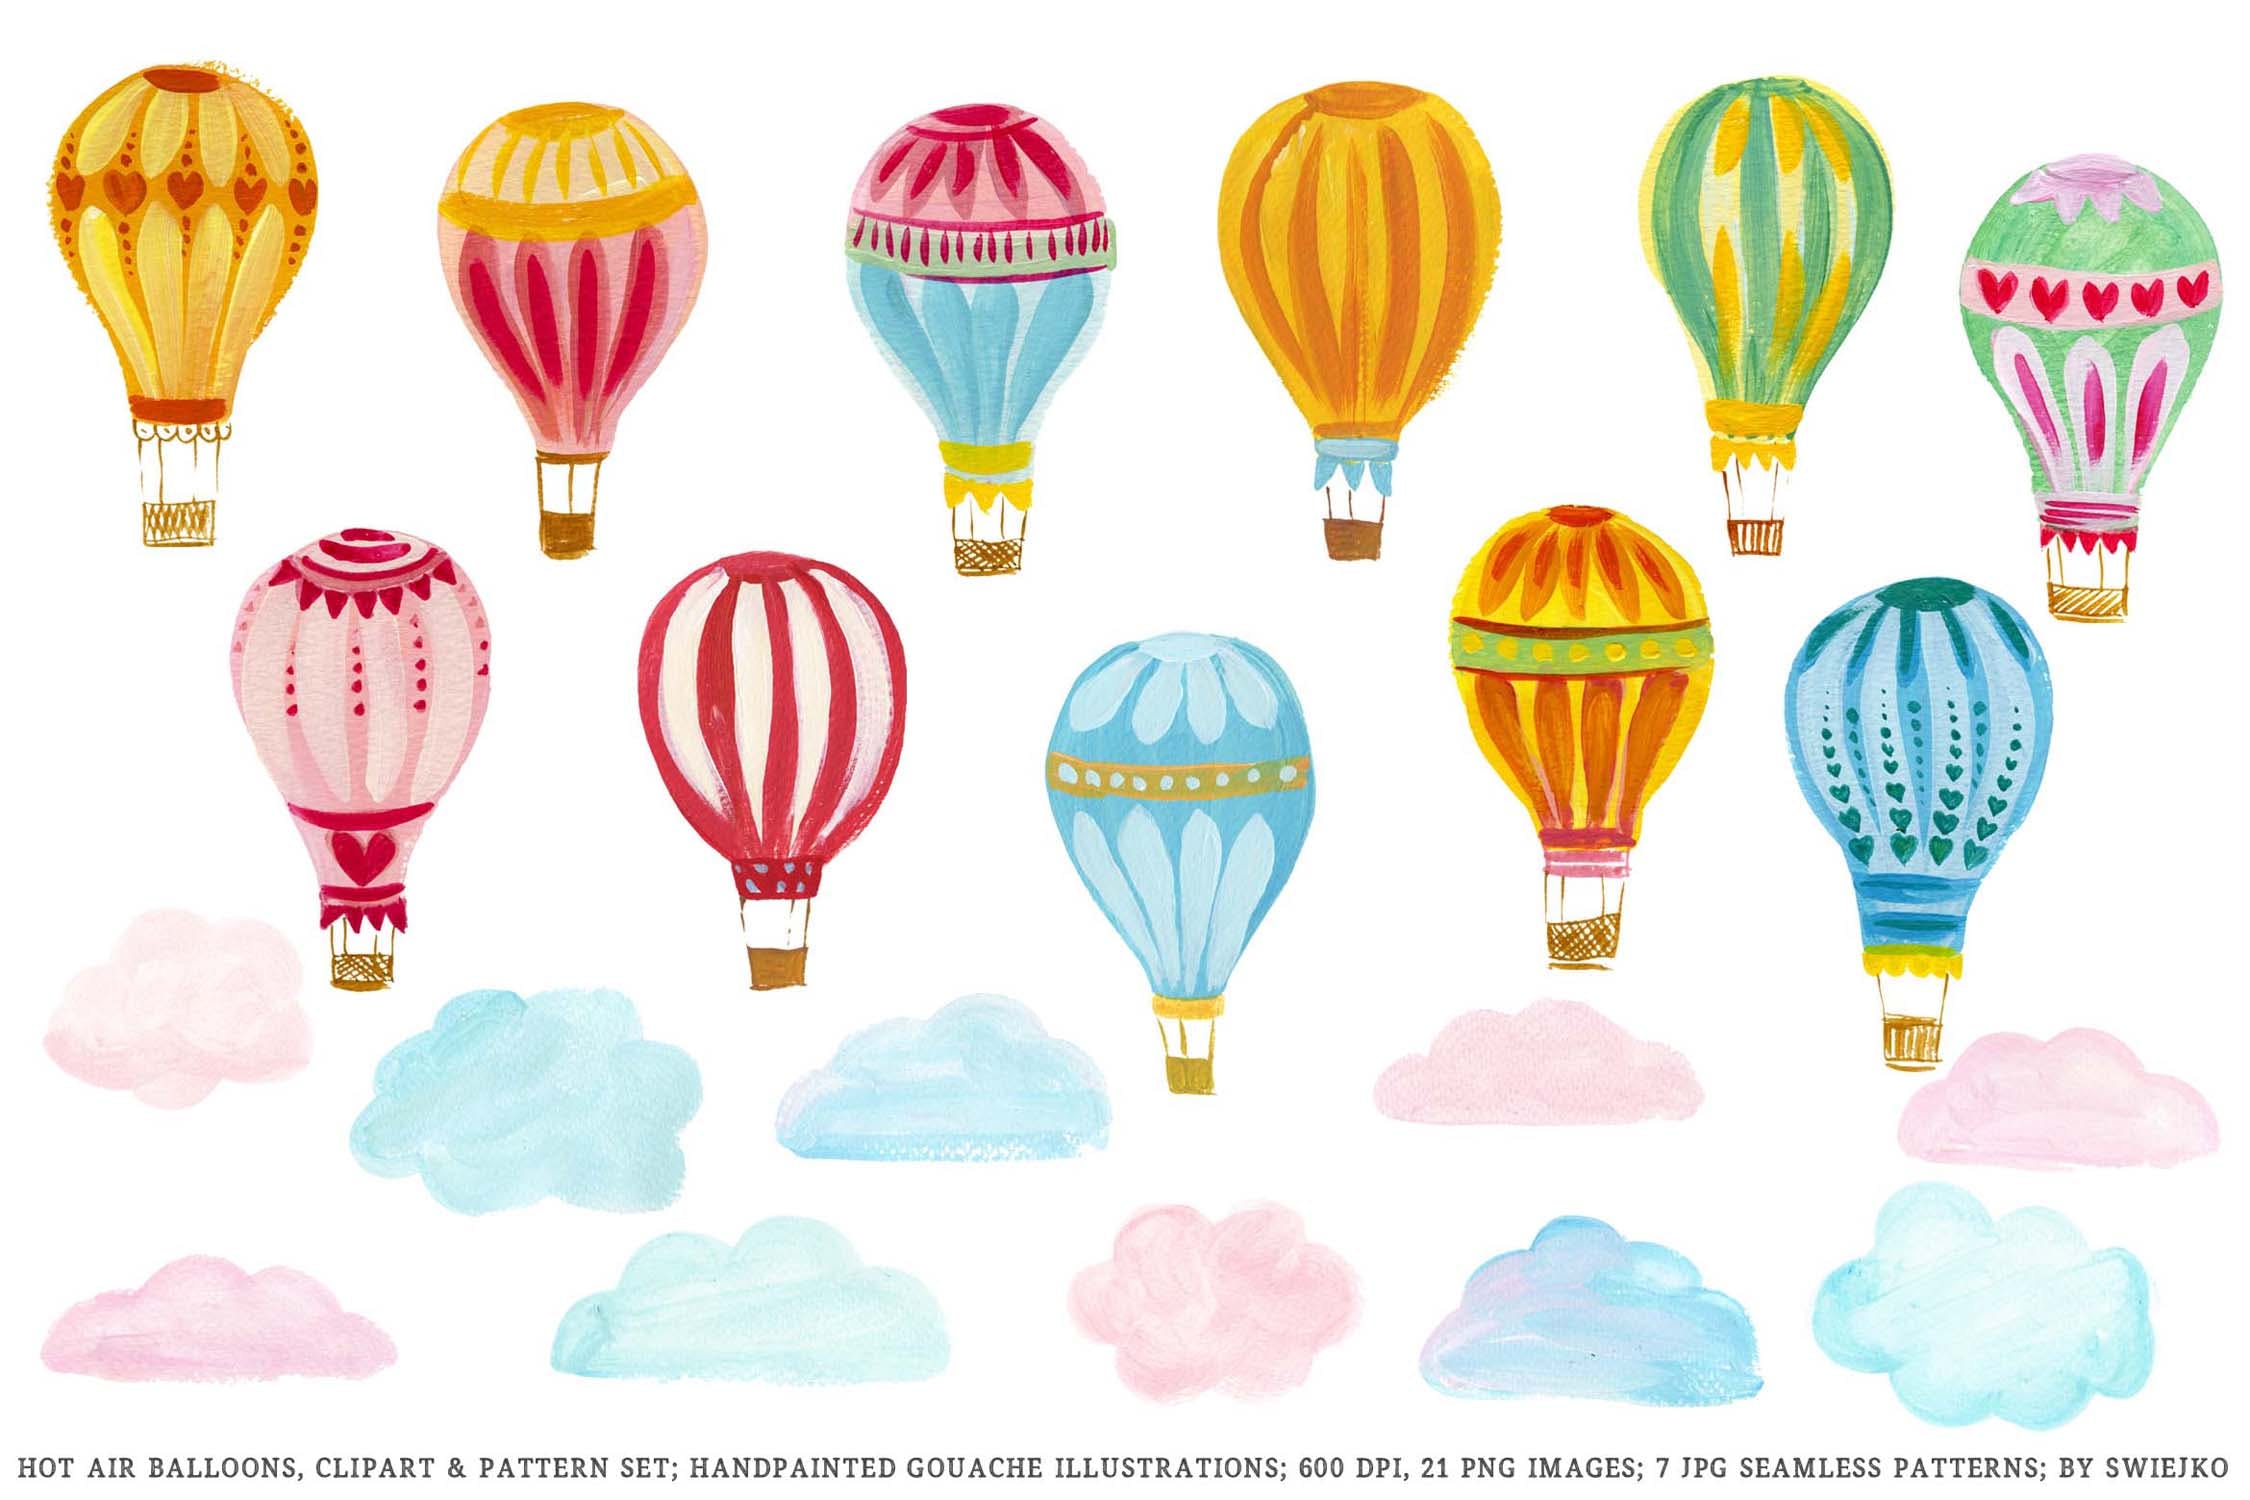 热气球剪贴画和图案集 Hot Air Balloons clipart & pattern set 图片素材 第2张